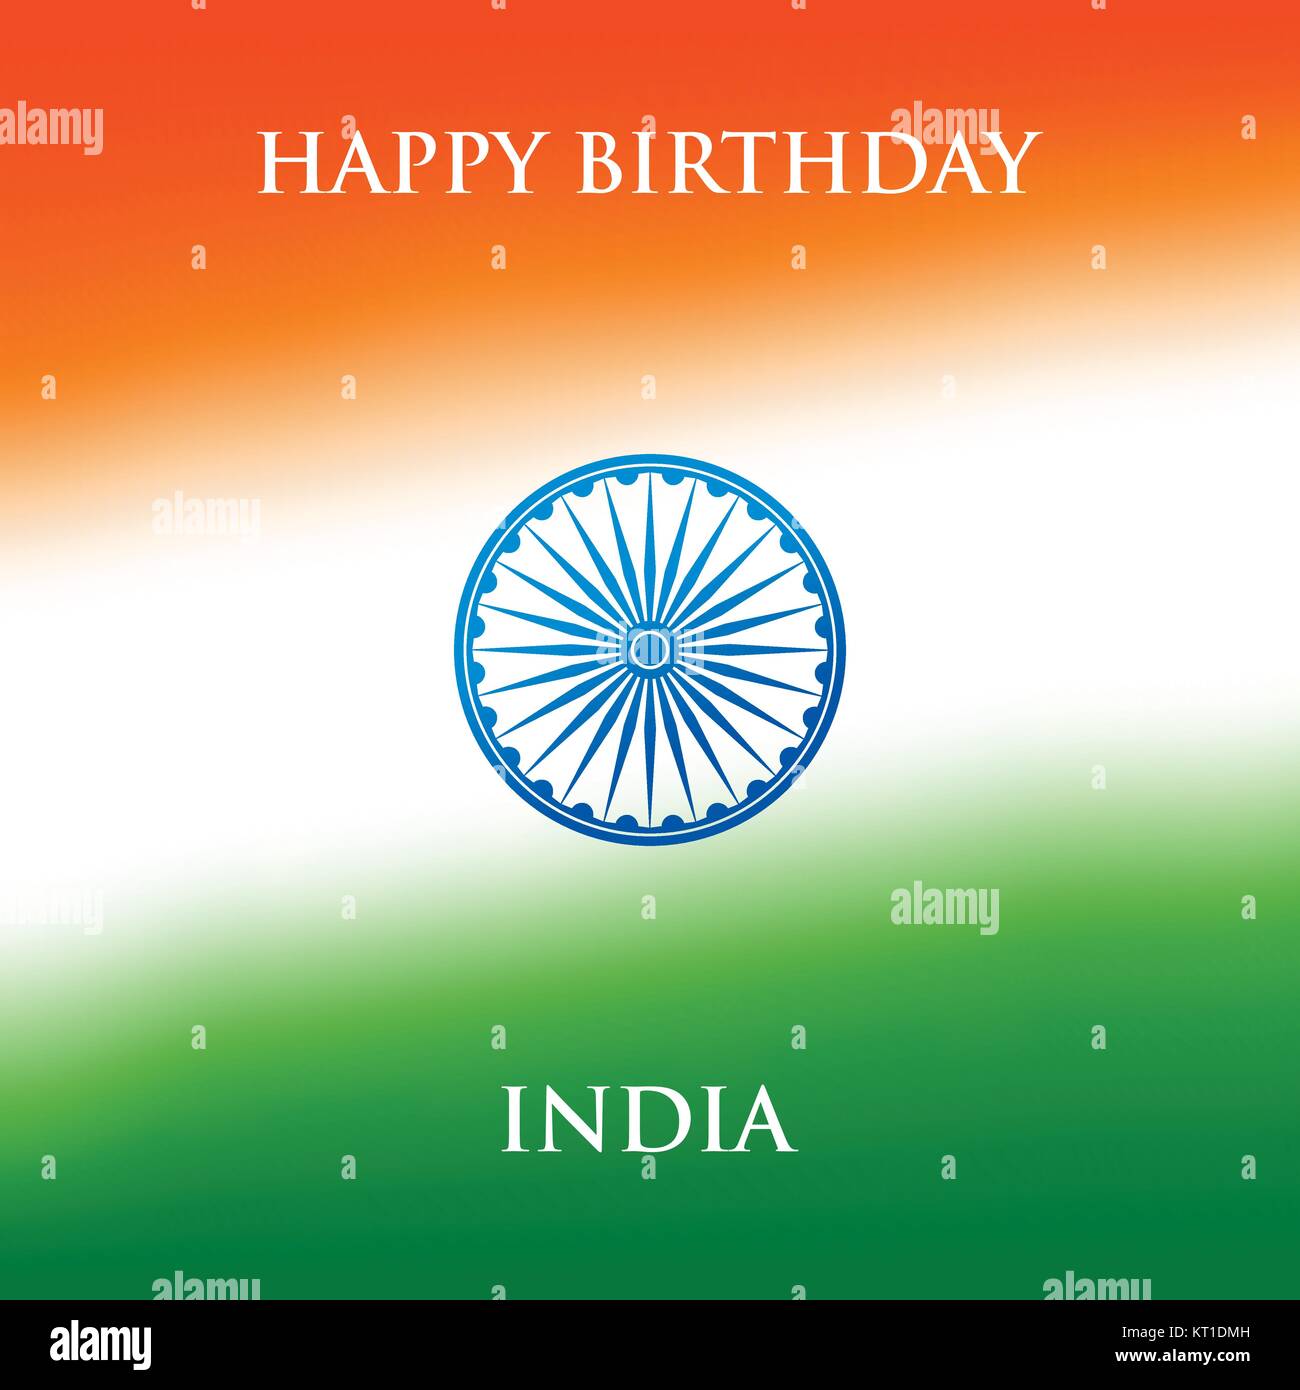 Indien Tag der Republik Grußkarte design Vector Illustration. 26. Januar - Tag der Republik Indien. Stock Vektor